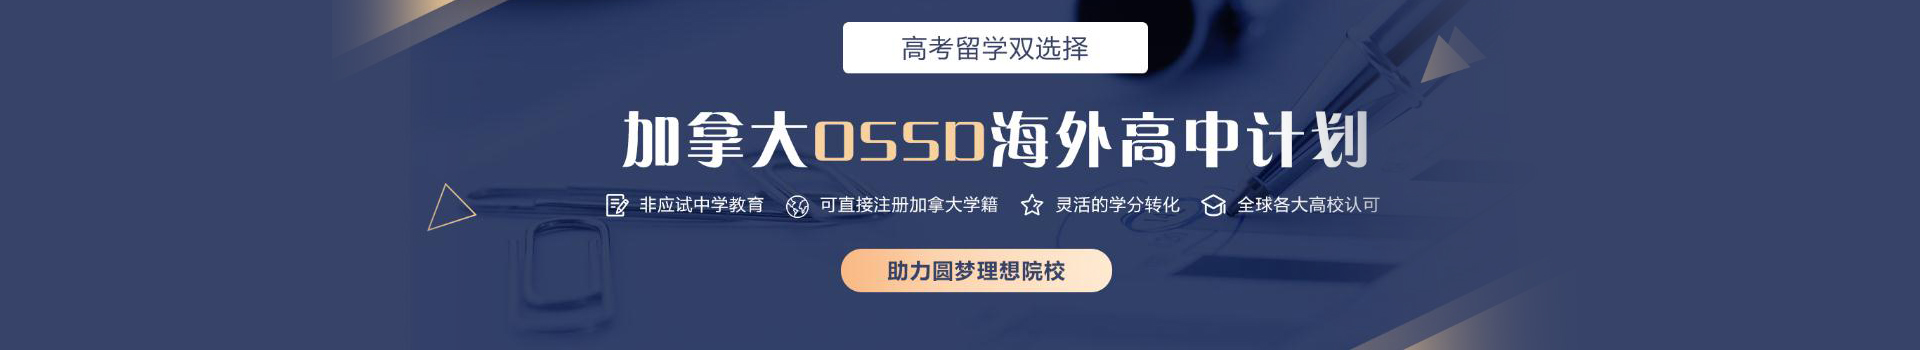 长沙新航道OSSD课程